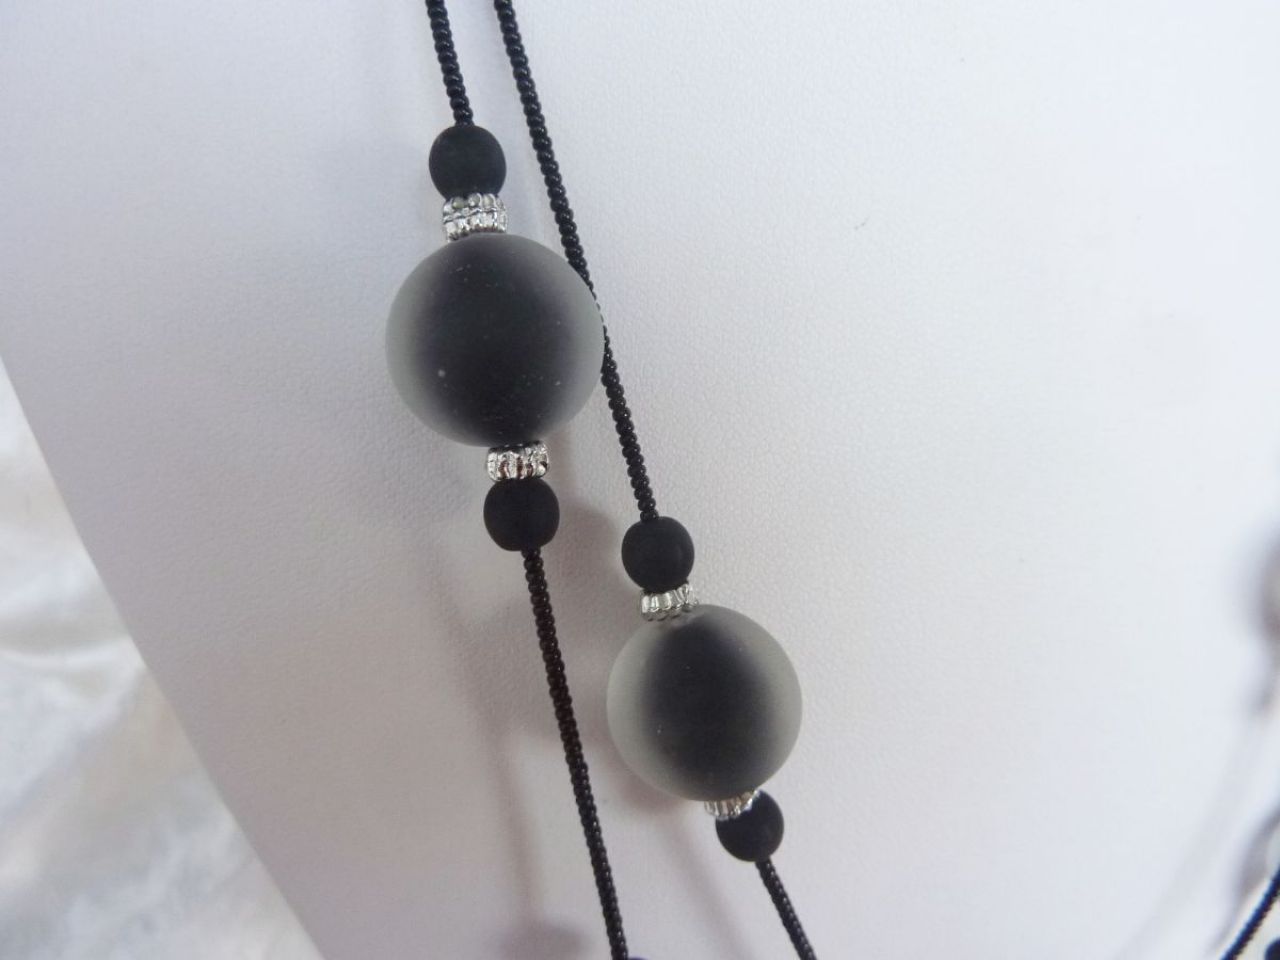 collier en verre de murano 2 fils, perles fait min couleur noir recouvertes de cristal transparent satiné, fil en rocaille noir 